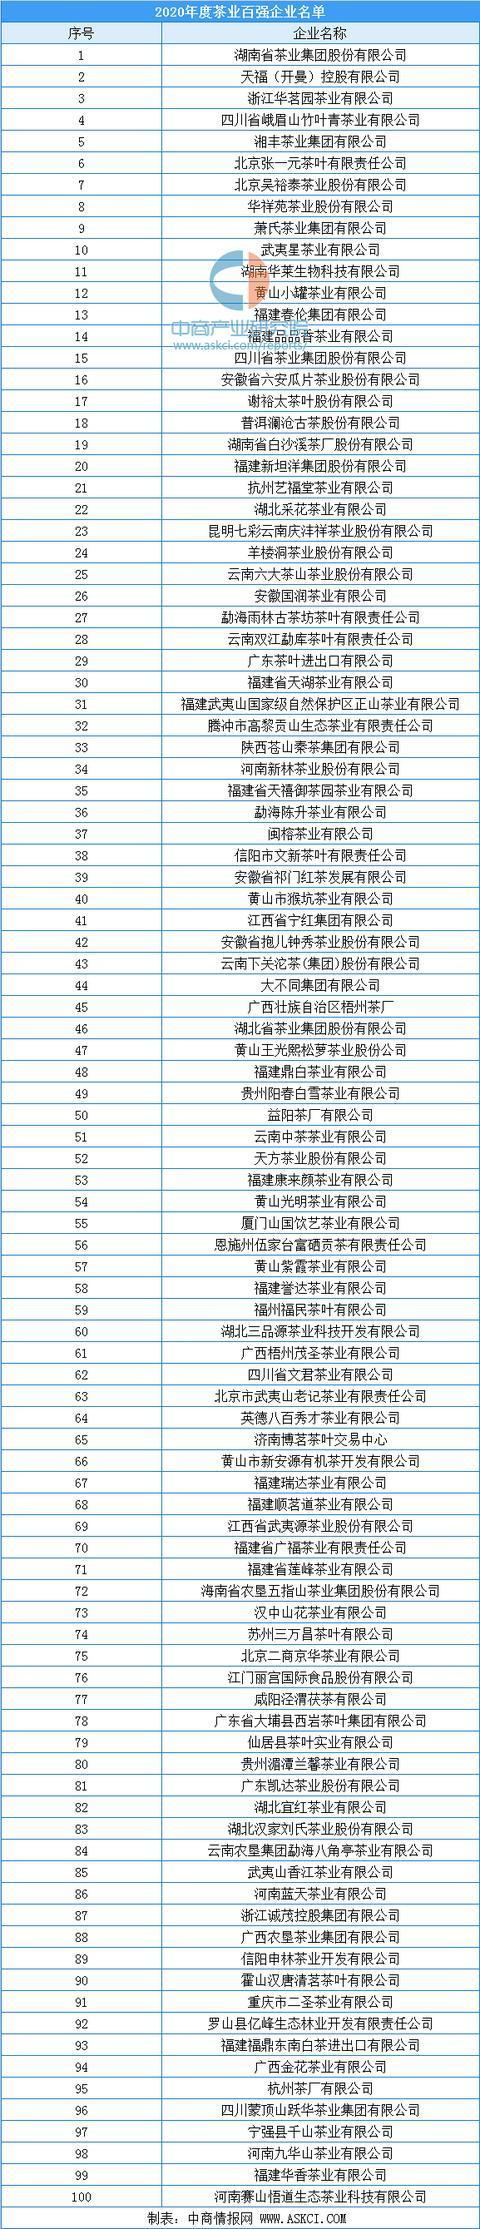 中国茶叶企业排名,中国茶叶企业排行榜2019